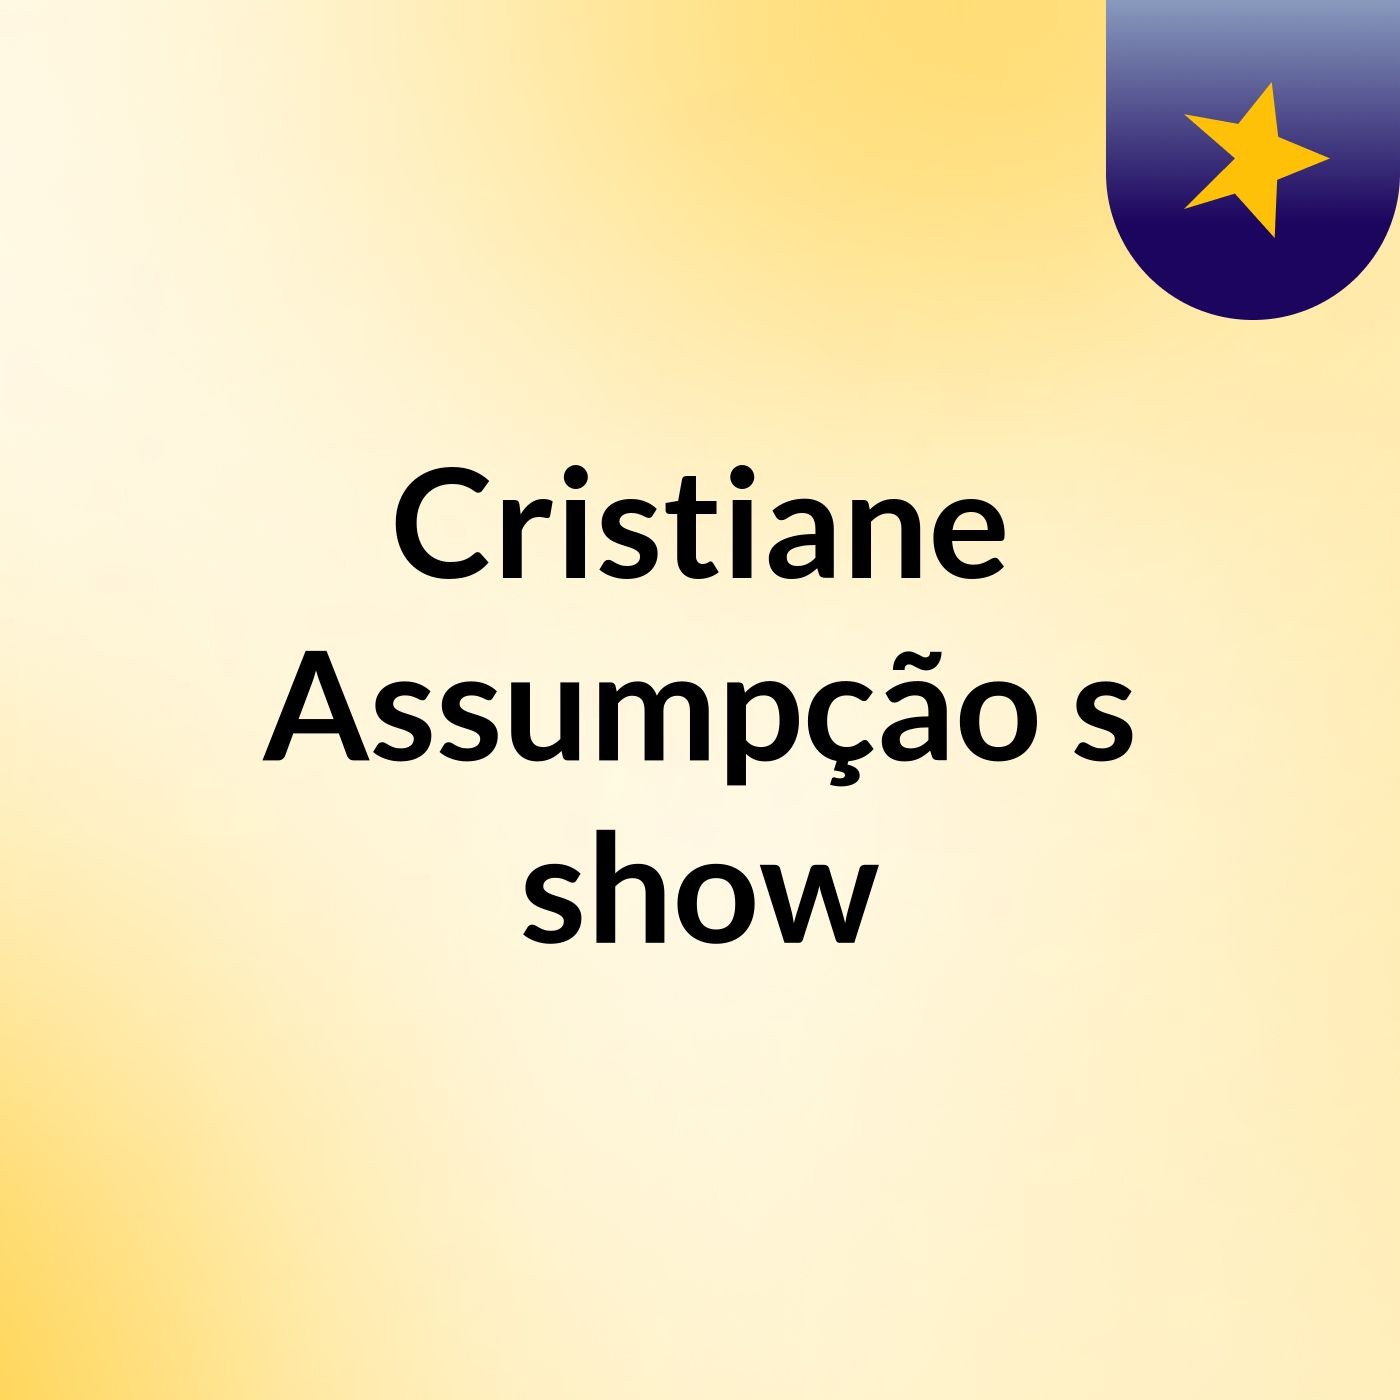 Cristiane Assumpção's show